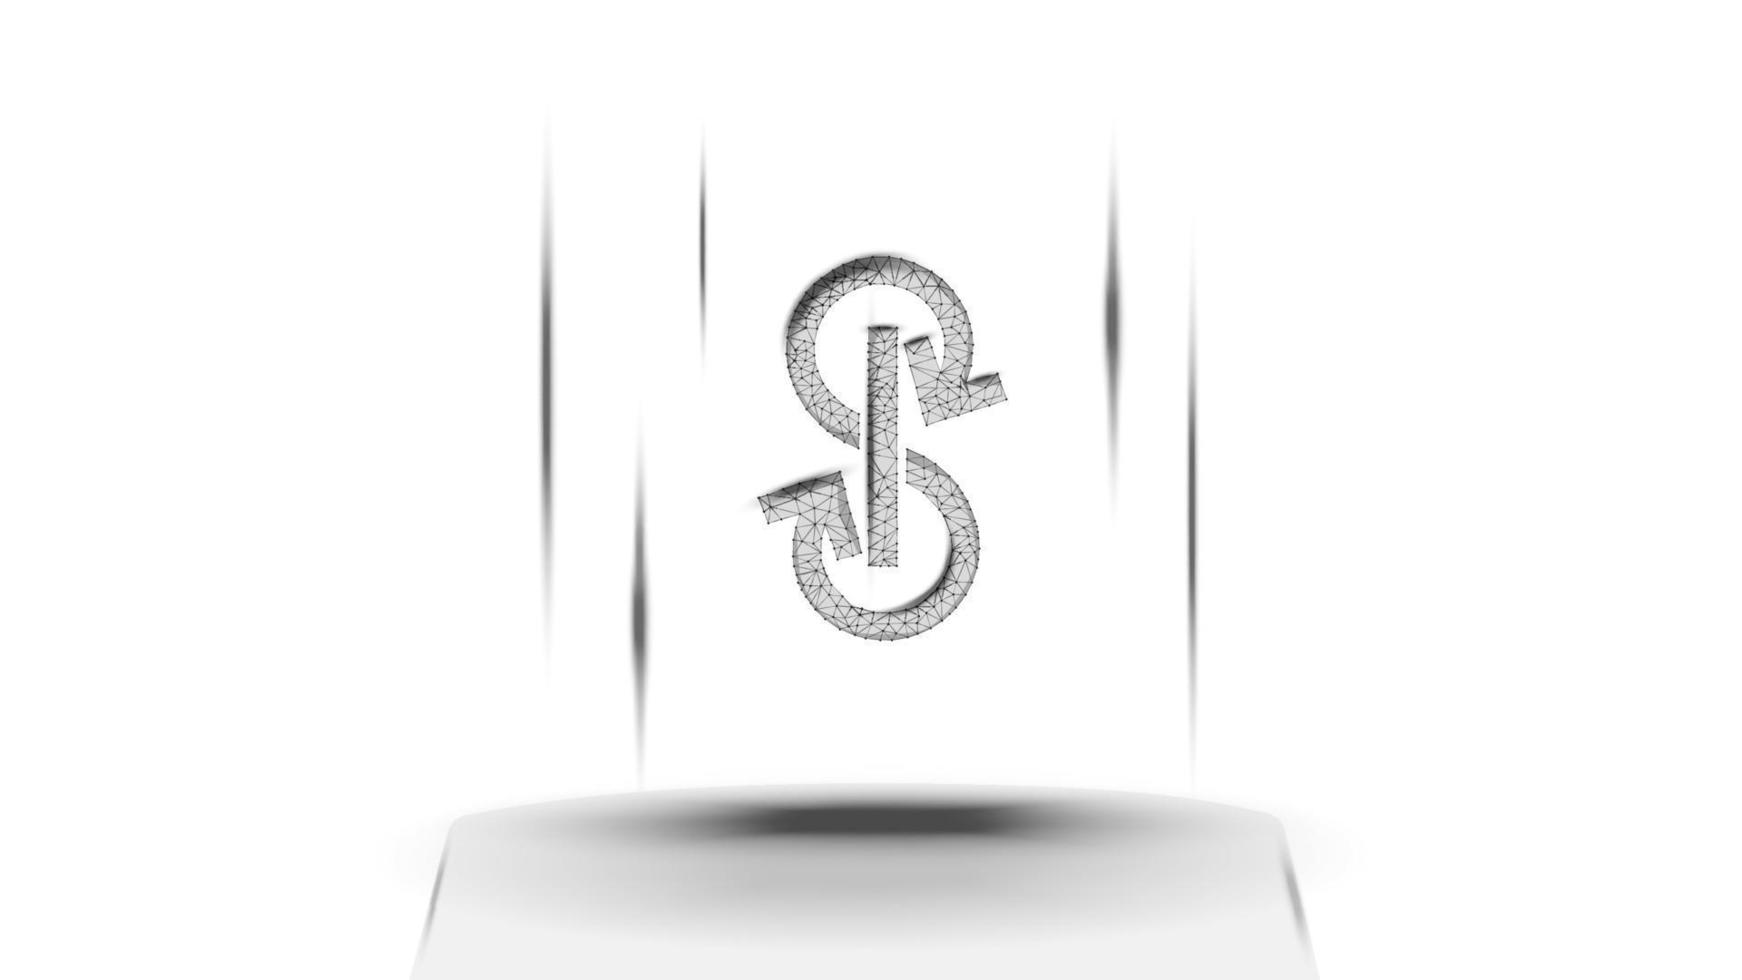 längta.ekonomi yfi tecken symbol av de defi systemet ovan de piedestal på vit bakgrund. kryptovaluta logotyp ikon. decentraliserad finansiera program. vektor illustration för hemsida eller baner.